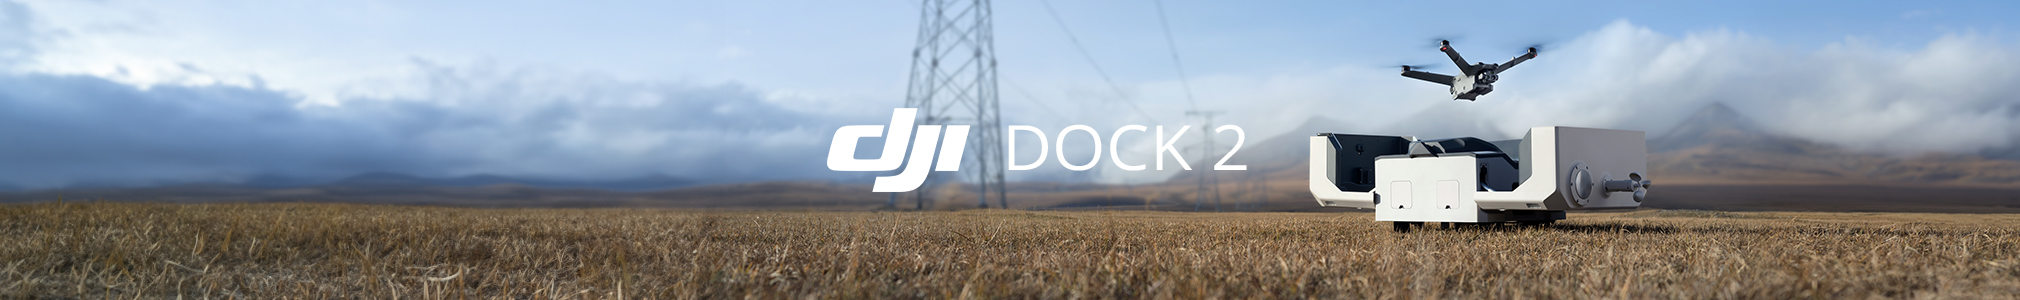 DJI Dock 2 - DJI Matrice 3D/3TD